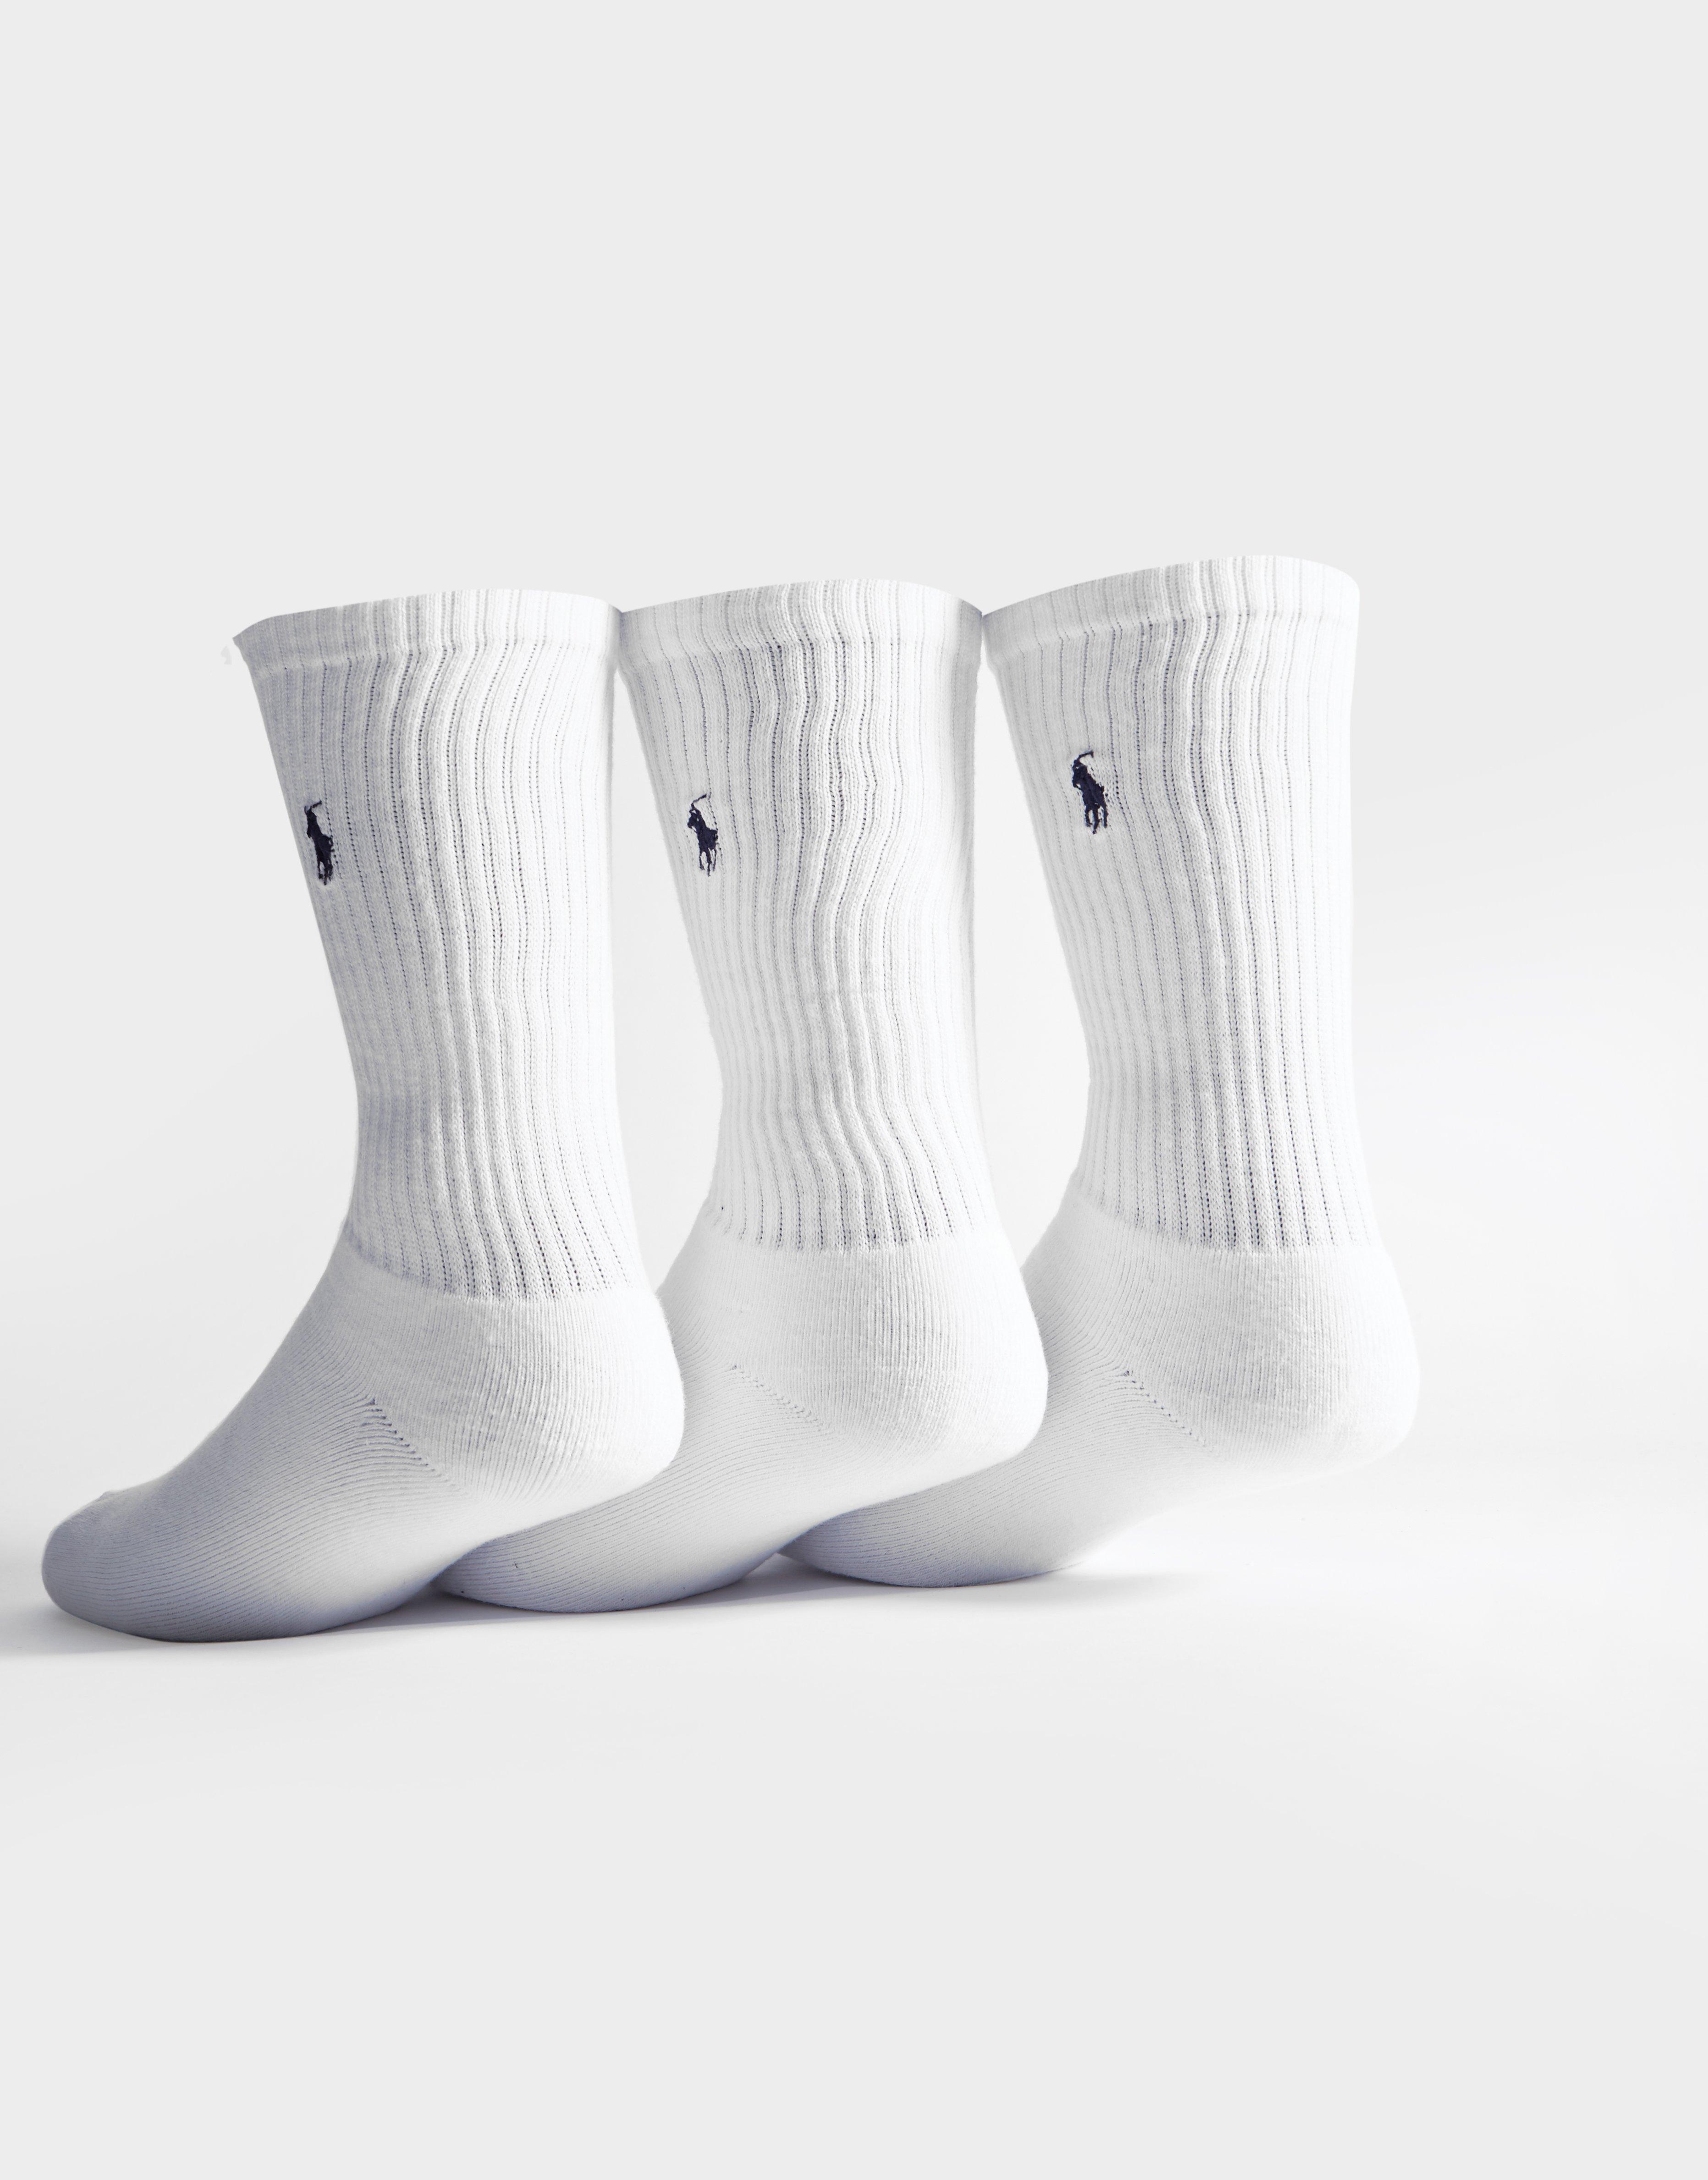 ralph lauren men's socks white